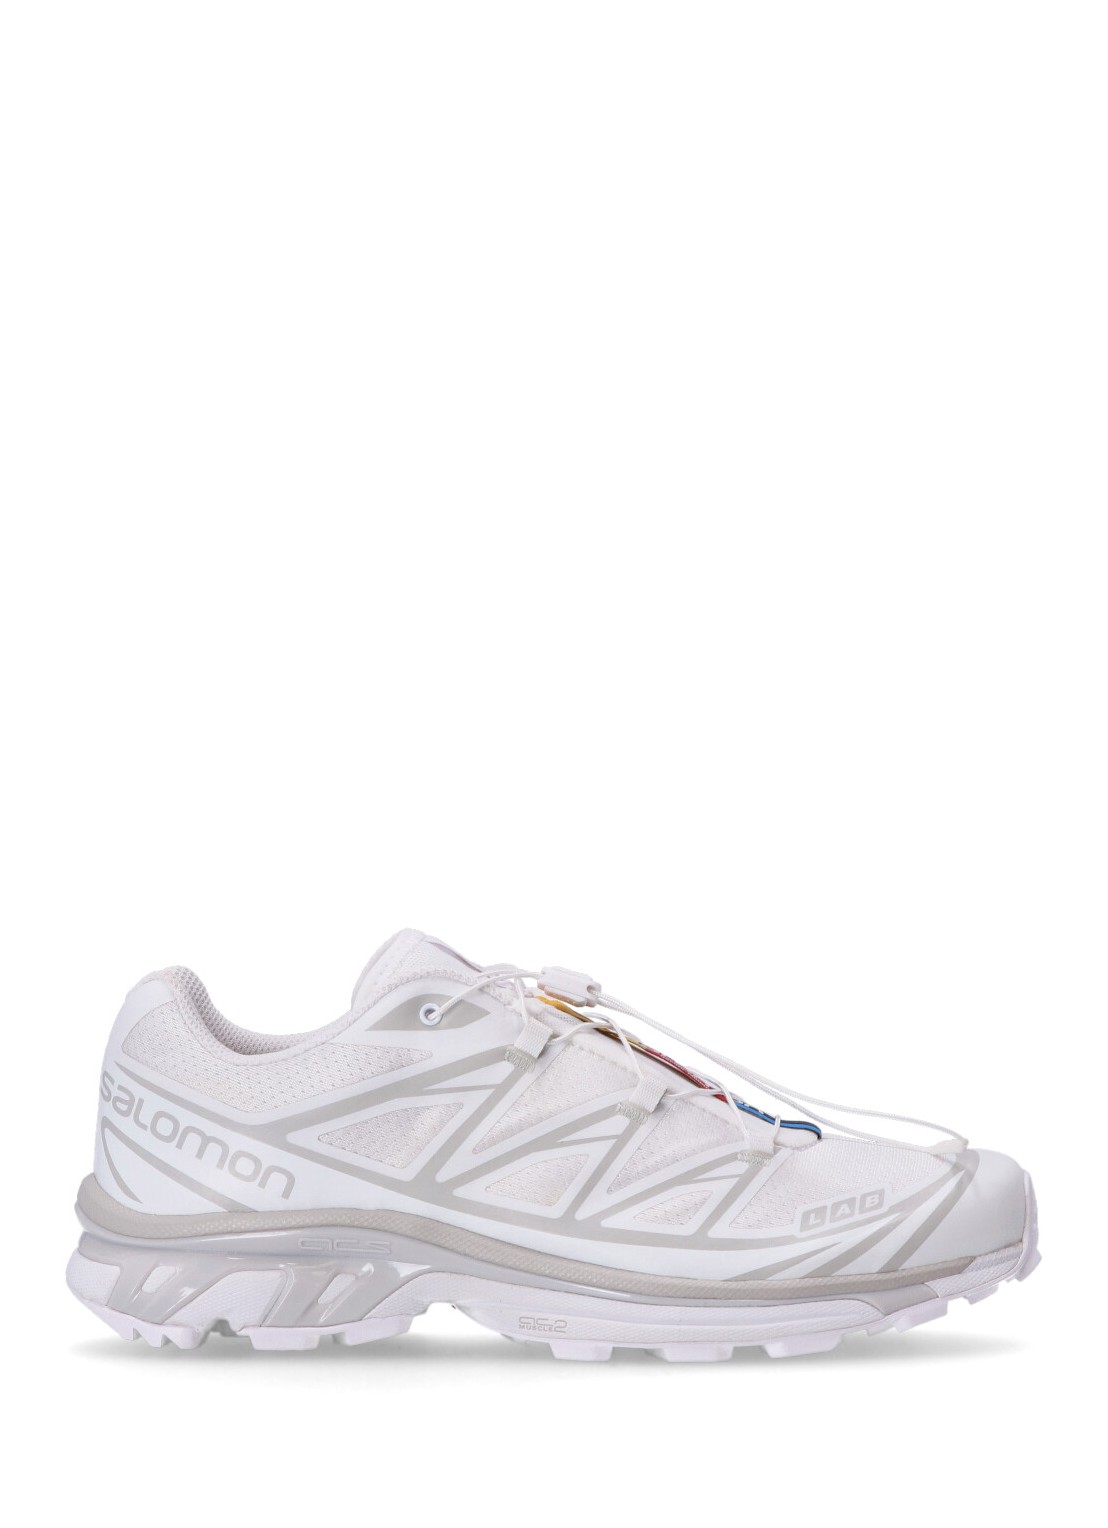 Sneaker salomon sneaker man xt-6 l41252900 white white lunar rock talla blanco
 